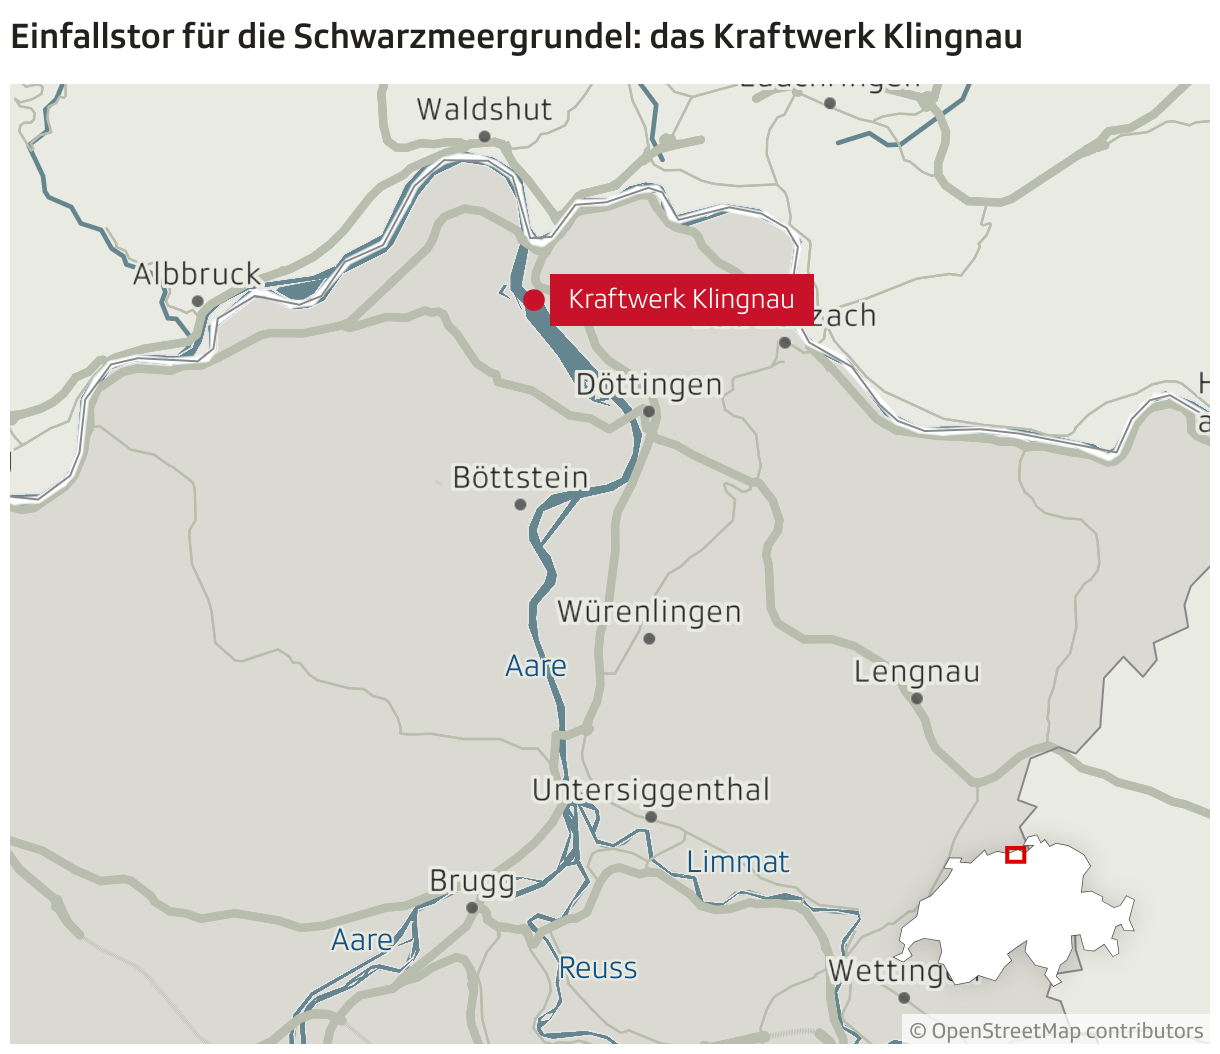 Kraftwerk Klingnau am Klingnauer Stausee, die Aare fliesst dort aus dem Rhein anschliessend weiter nach Untersiggenthal, wo daraus wiederum Reuss und Limmat entspringen.